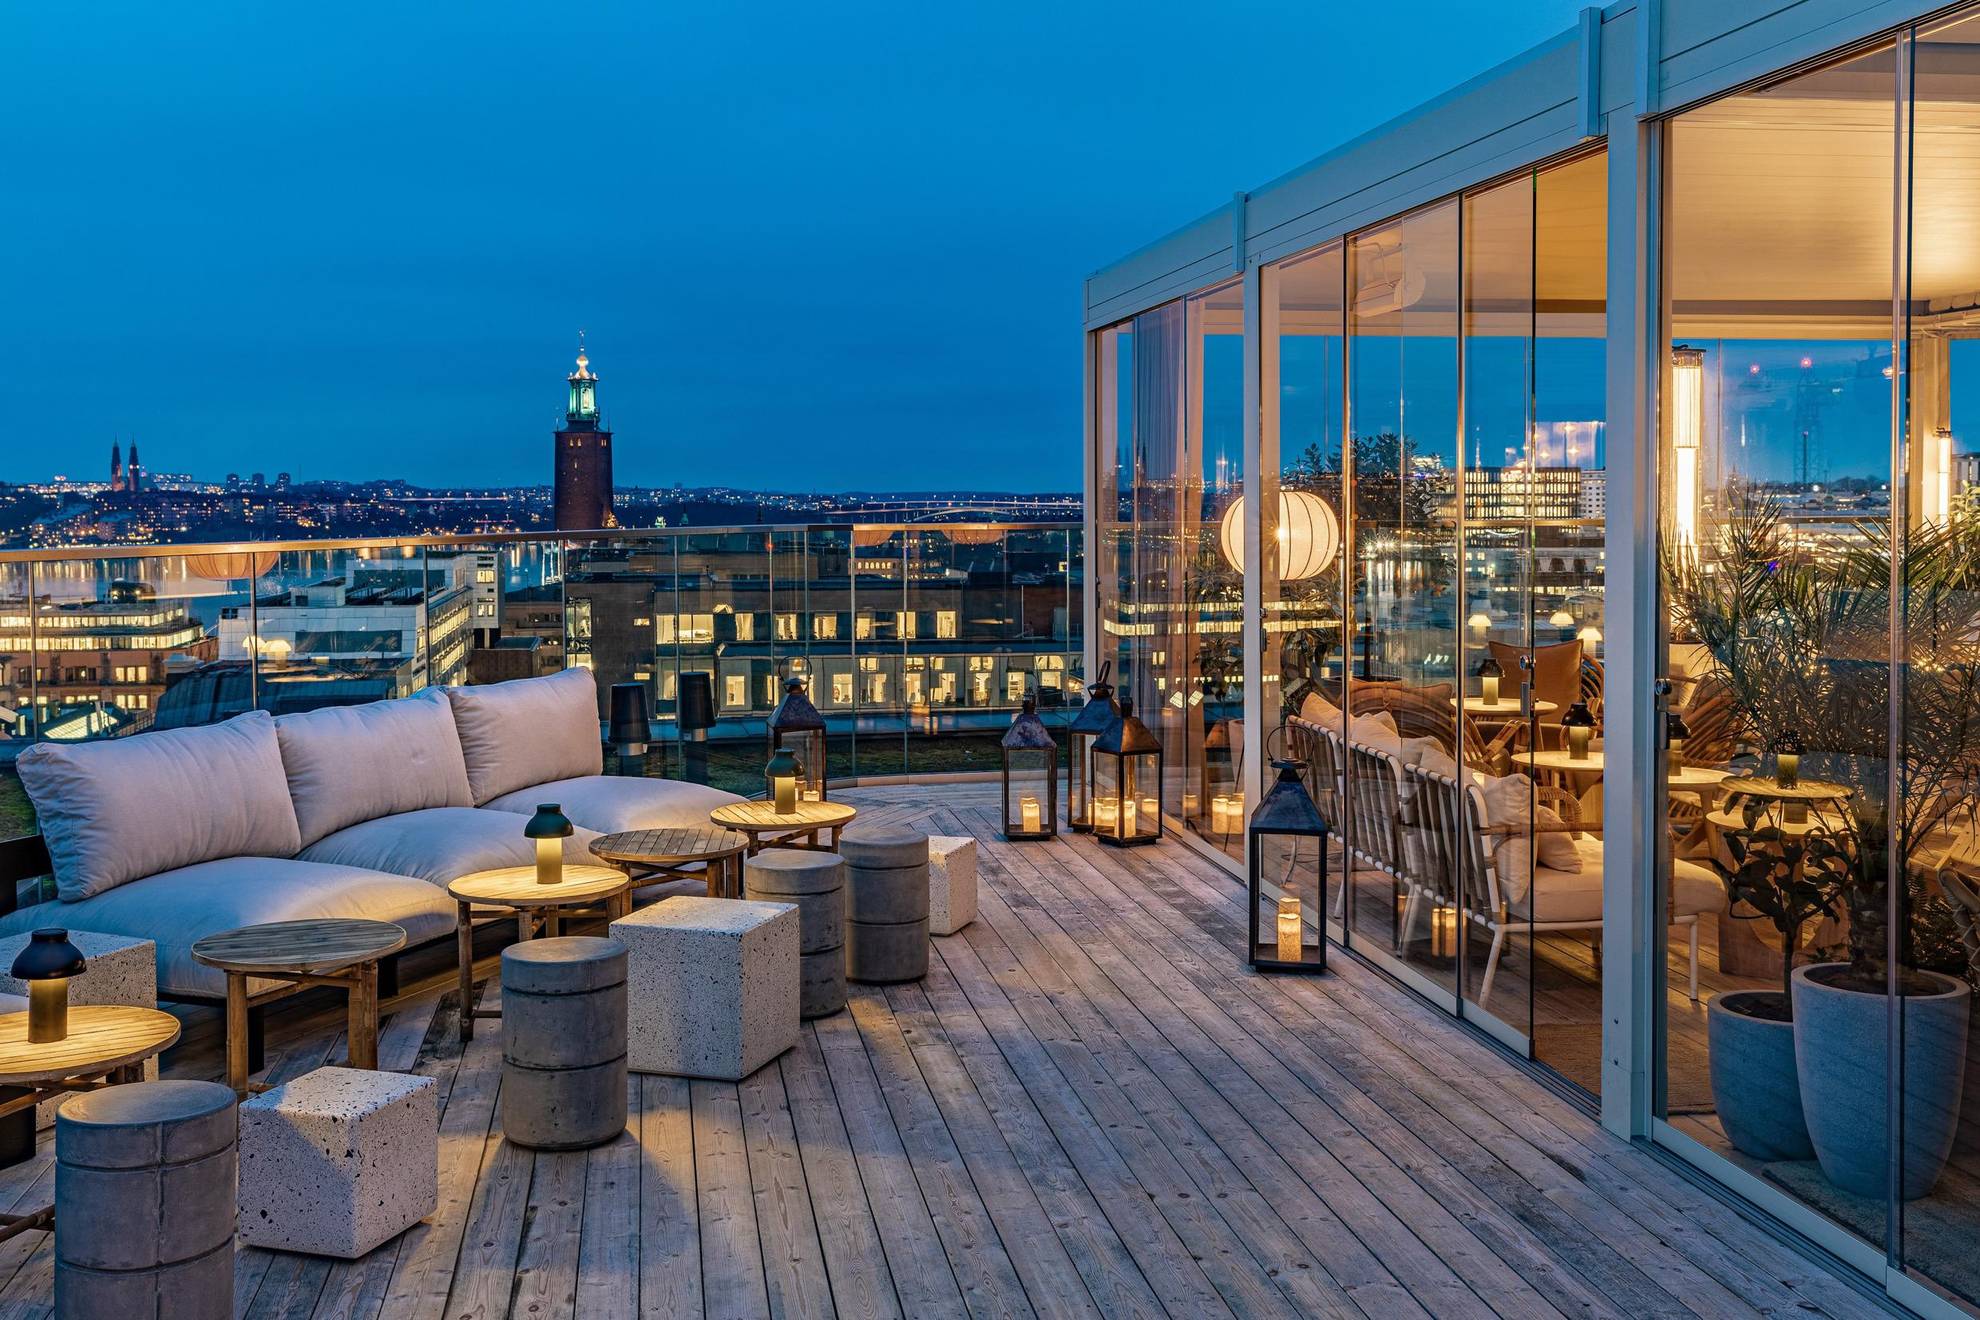 Un bar en plein air branché sur un rooftop avec une vue sur Stockholm et l'Hôtel de Ville. Sur la droite de la photo, on voit une véranda en verre.